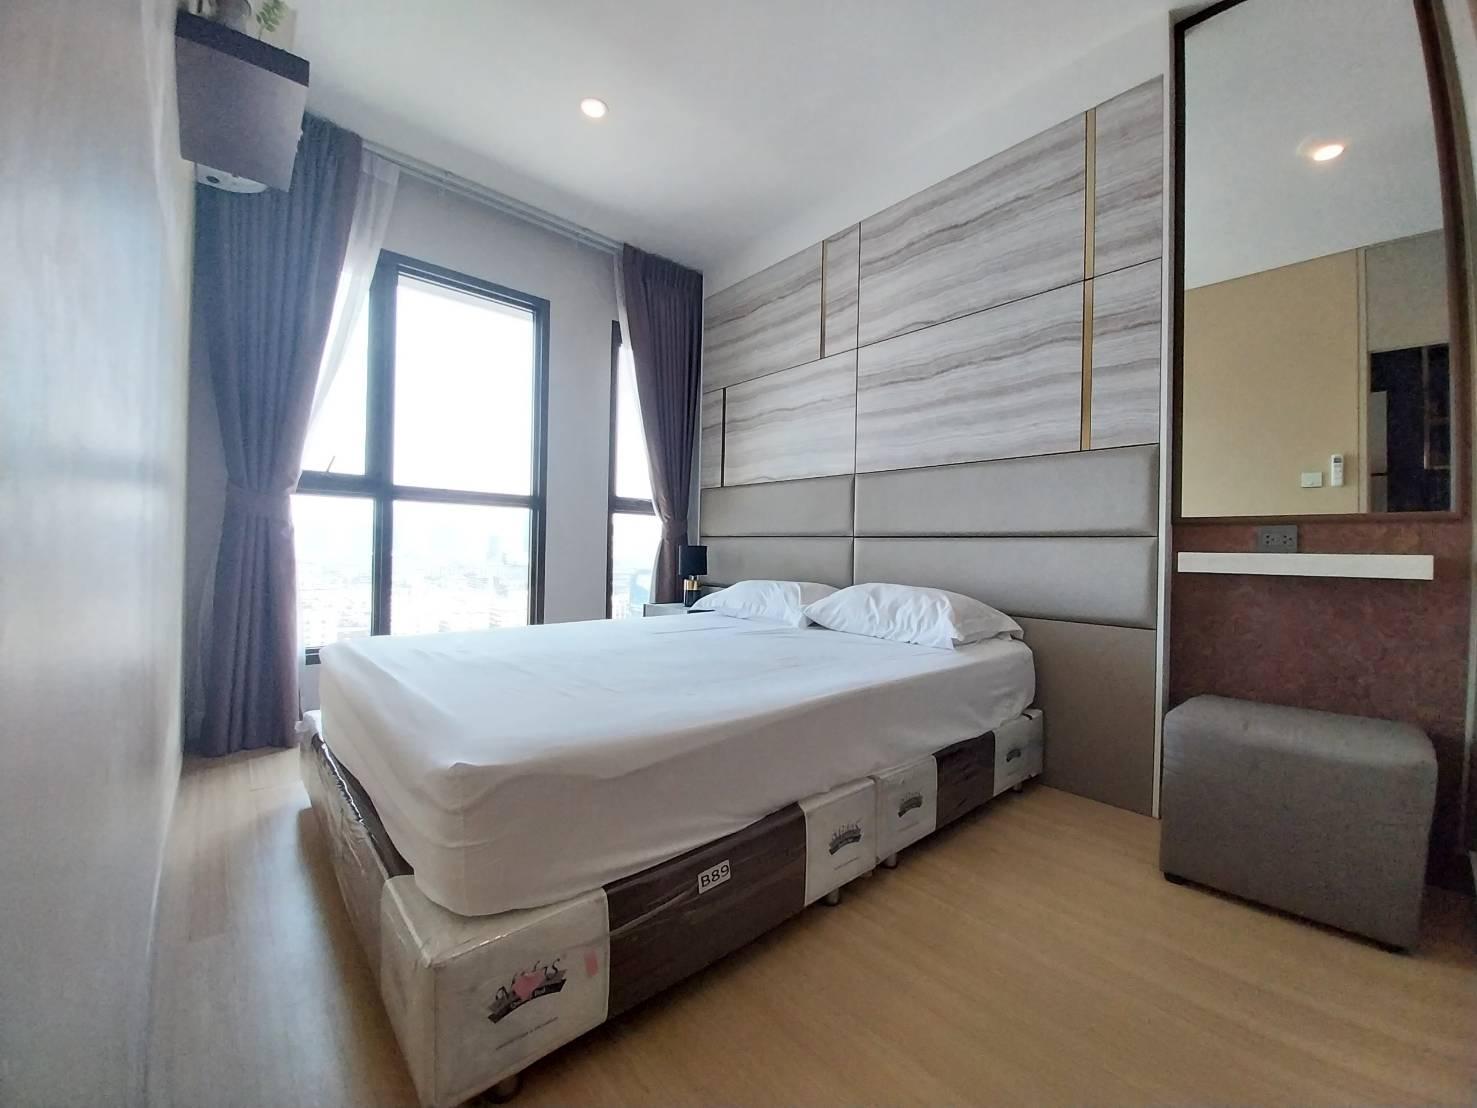 เช่าคอนโด ลุมพินี สวีท ดินแดง – ราชปรารภ คอนโดมิเนียม - Condo Rental Lumpini Suite Din Daeng – Ratchaprarop condominium - 2278841